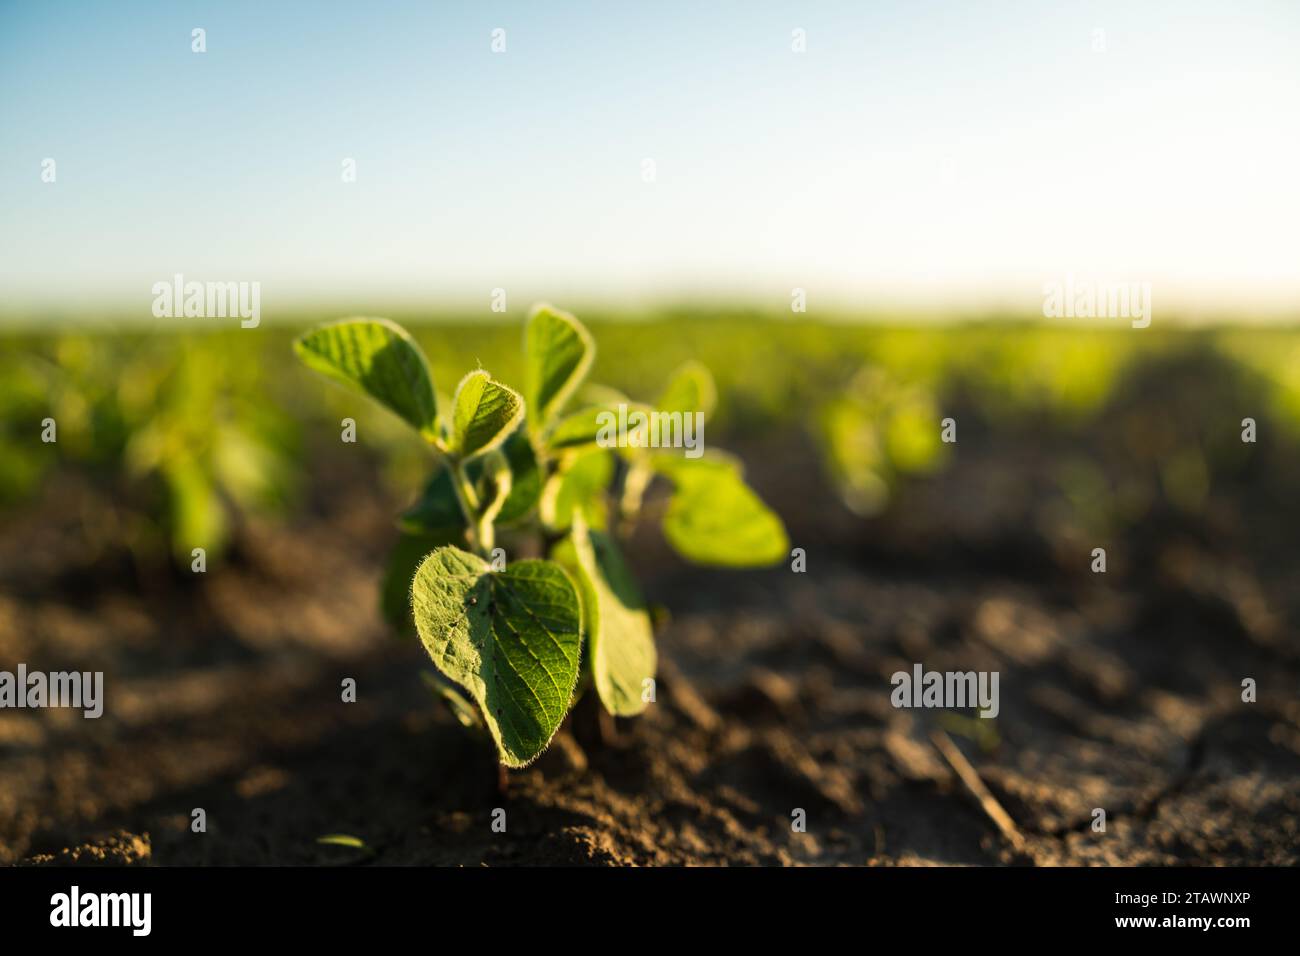 Les jeunes pousses d'une plante de soja poussent en rangées sur un champ agricole. Jeune plante de soja contre le soleil. Mise au point sélective. Flou artistique Banque D'Images